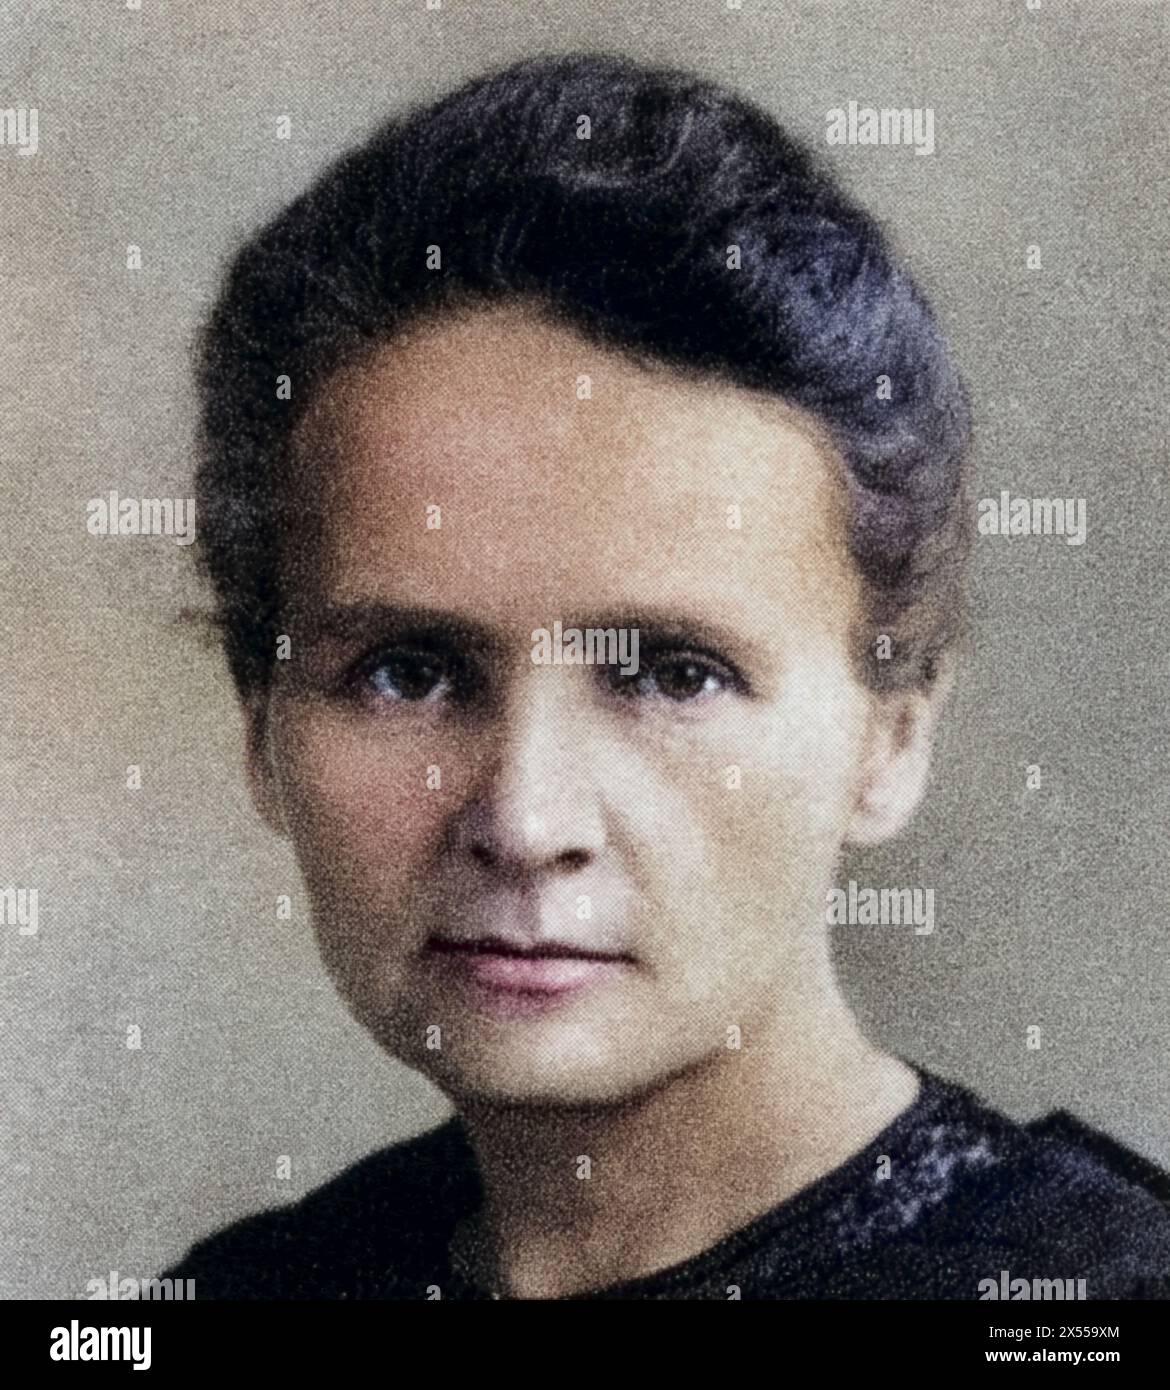 Curie, Marie, (eig. Marya Sklodowska), 7.11.1867 - 4.7.1934, Polish chemist, portrait, 1913, ADDITIONAL-RIGHTS-CLEARANCE-INFO-NOT-AVAILABLE Stock Photo